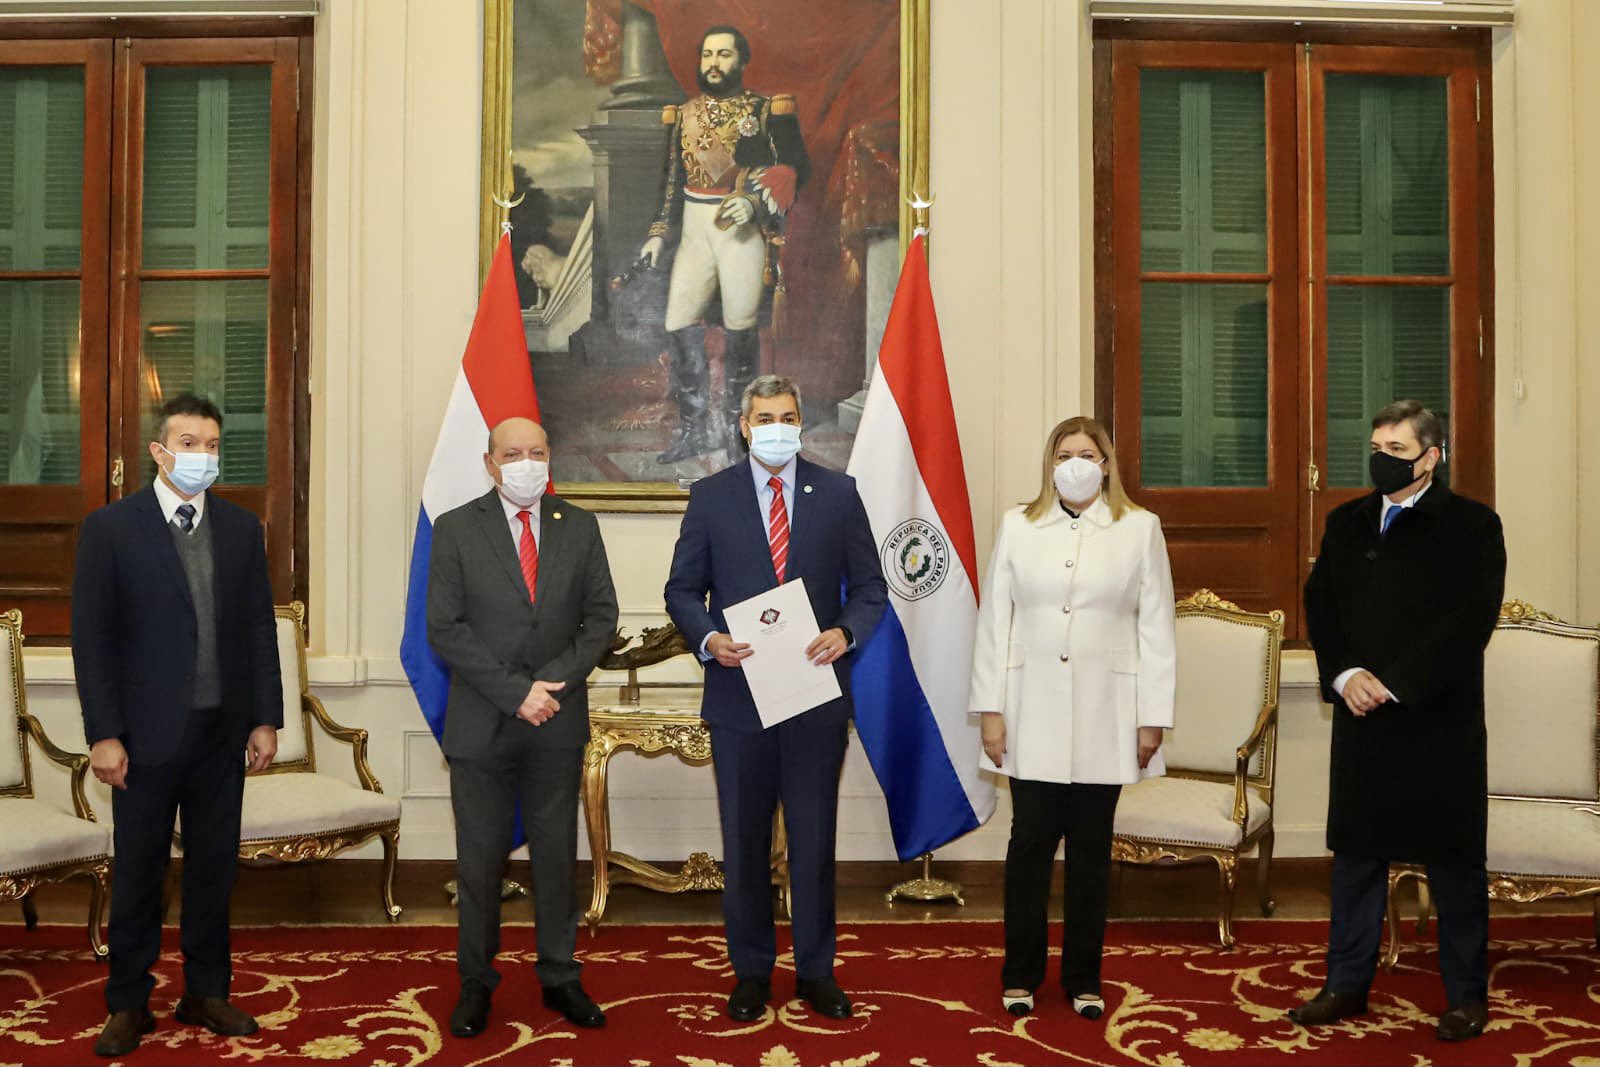 El Estado paraguayo y sus instituciones, con el presidente Mario Abdo a la cabeza, han salido mal evaluados en la más reciente encuesta del Celag.